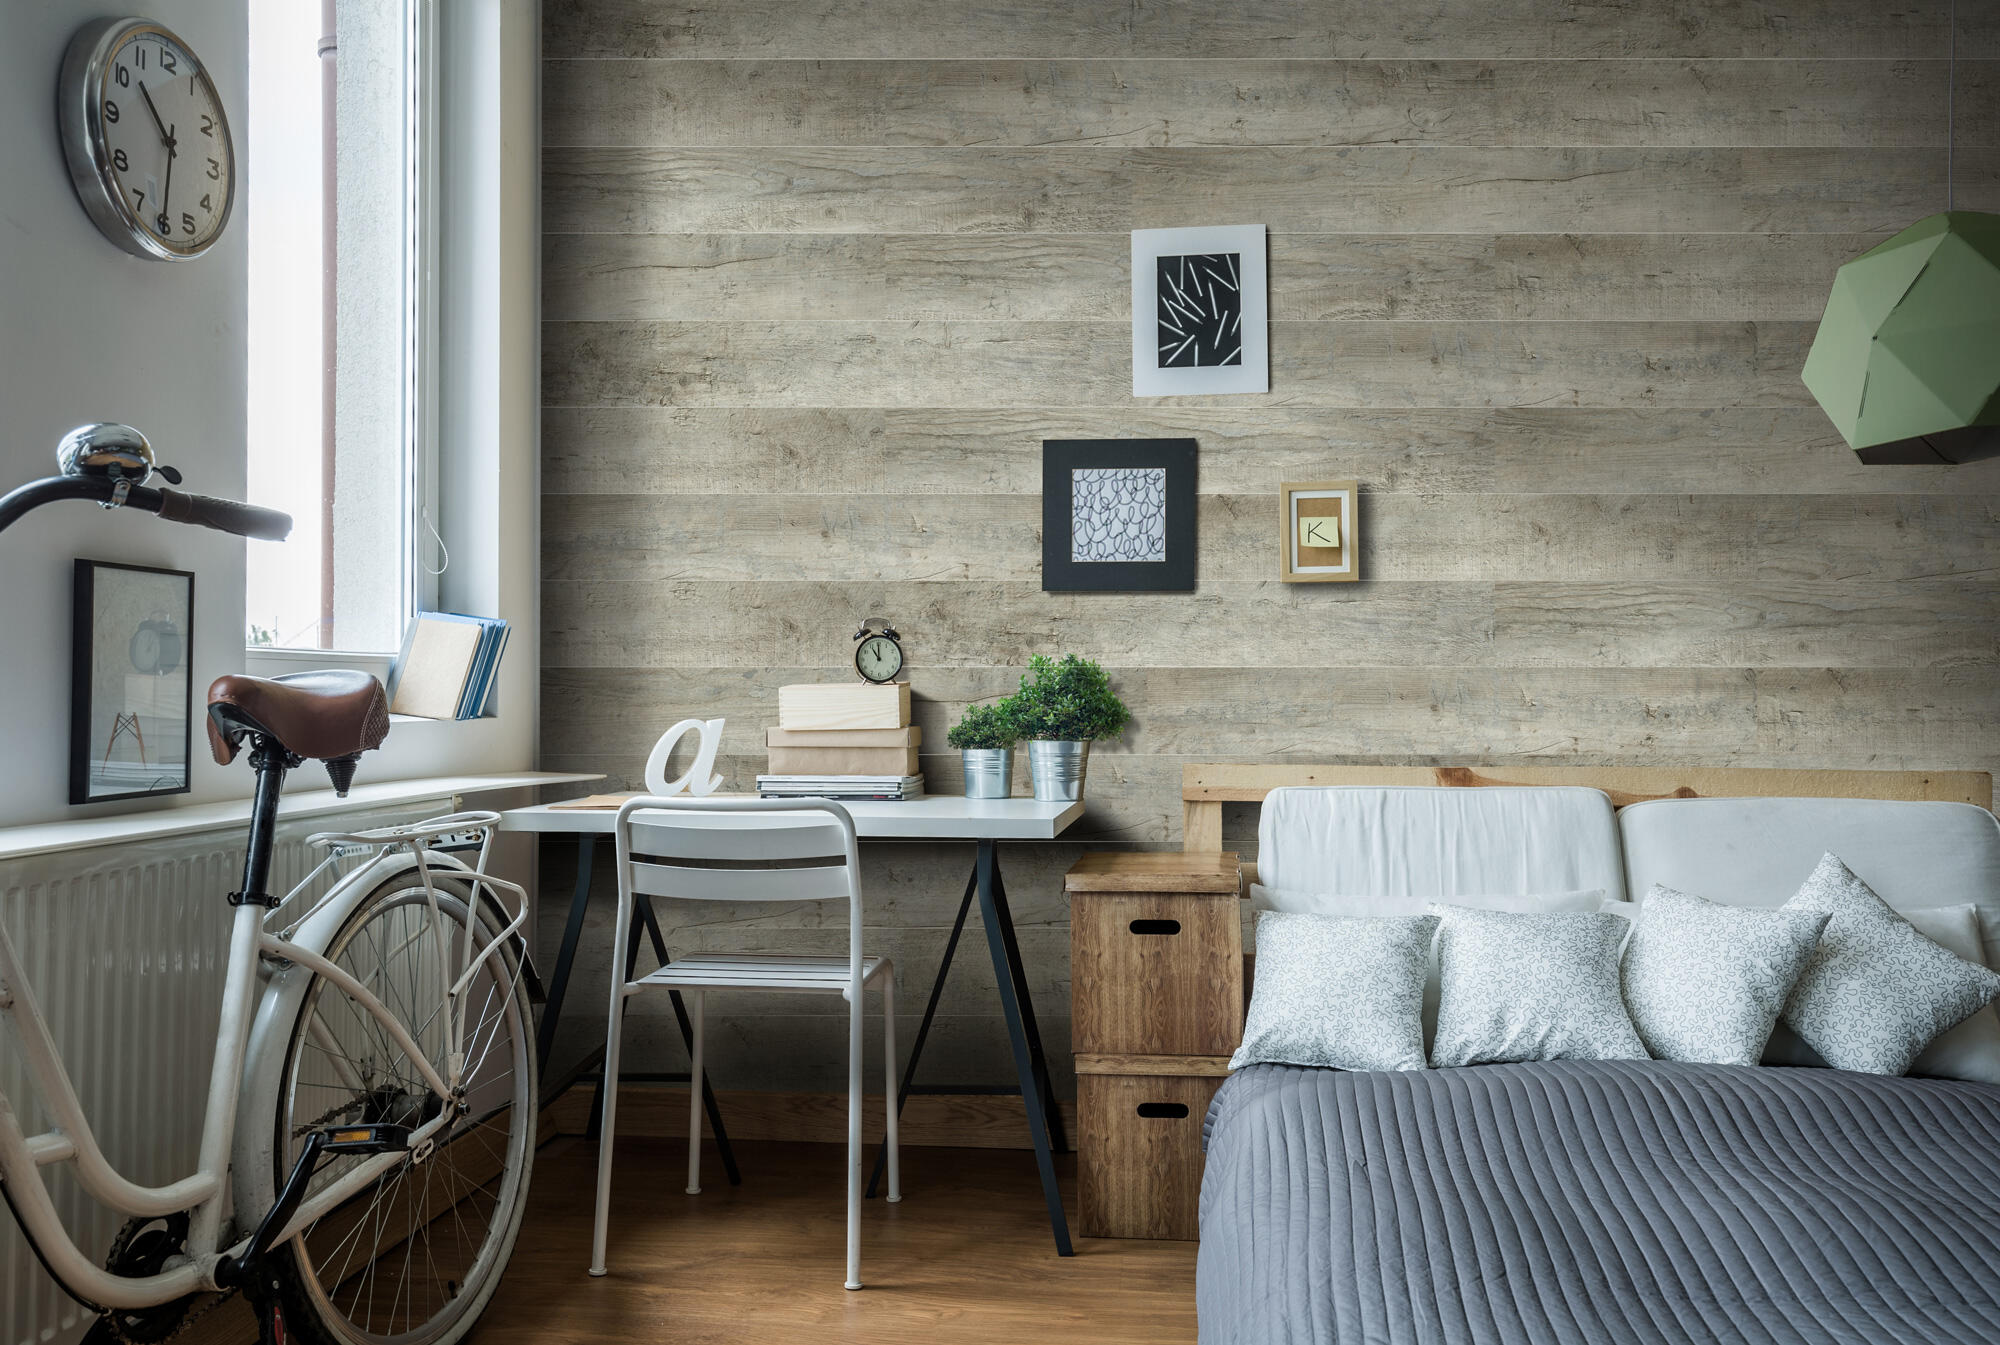 Cómo y dónde colocar un friso de madera: decorativo, además protege la pared